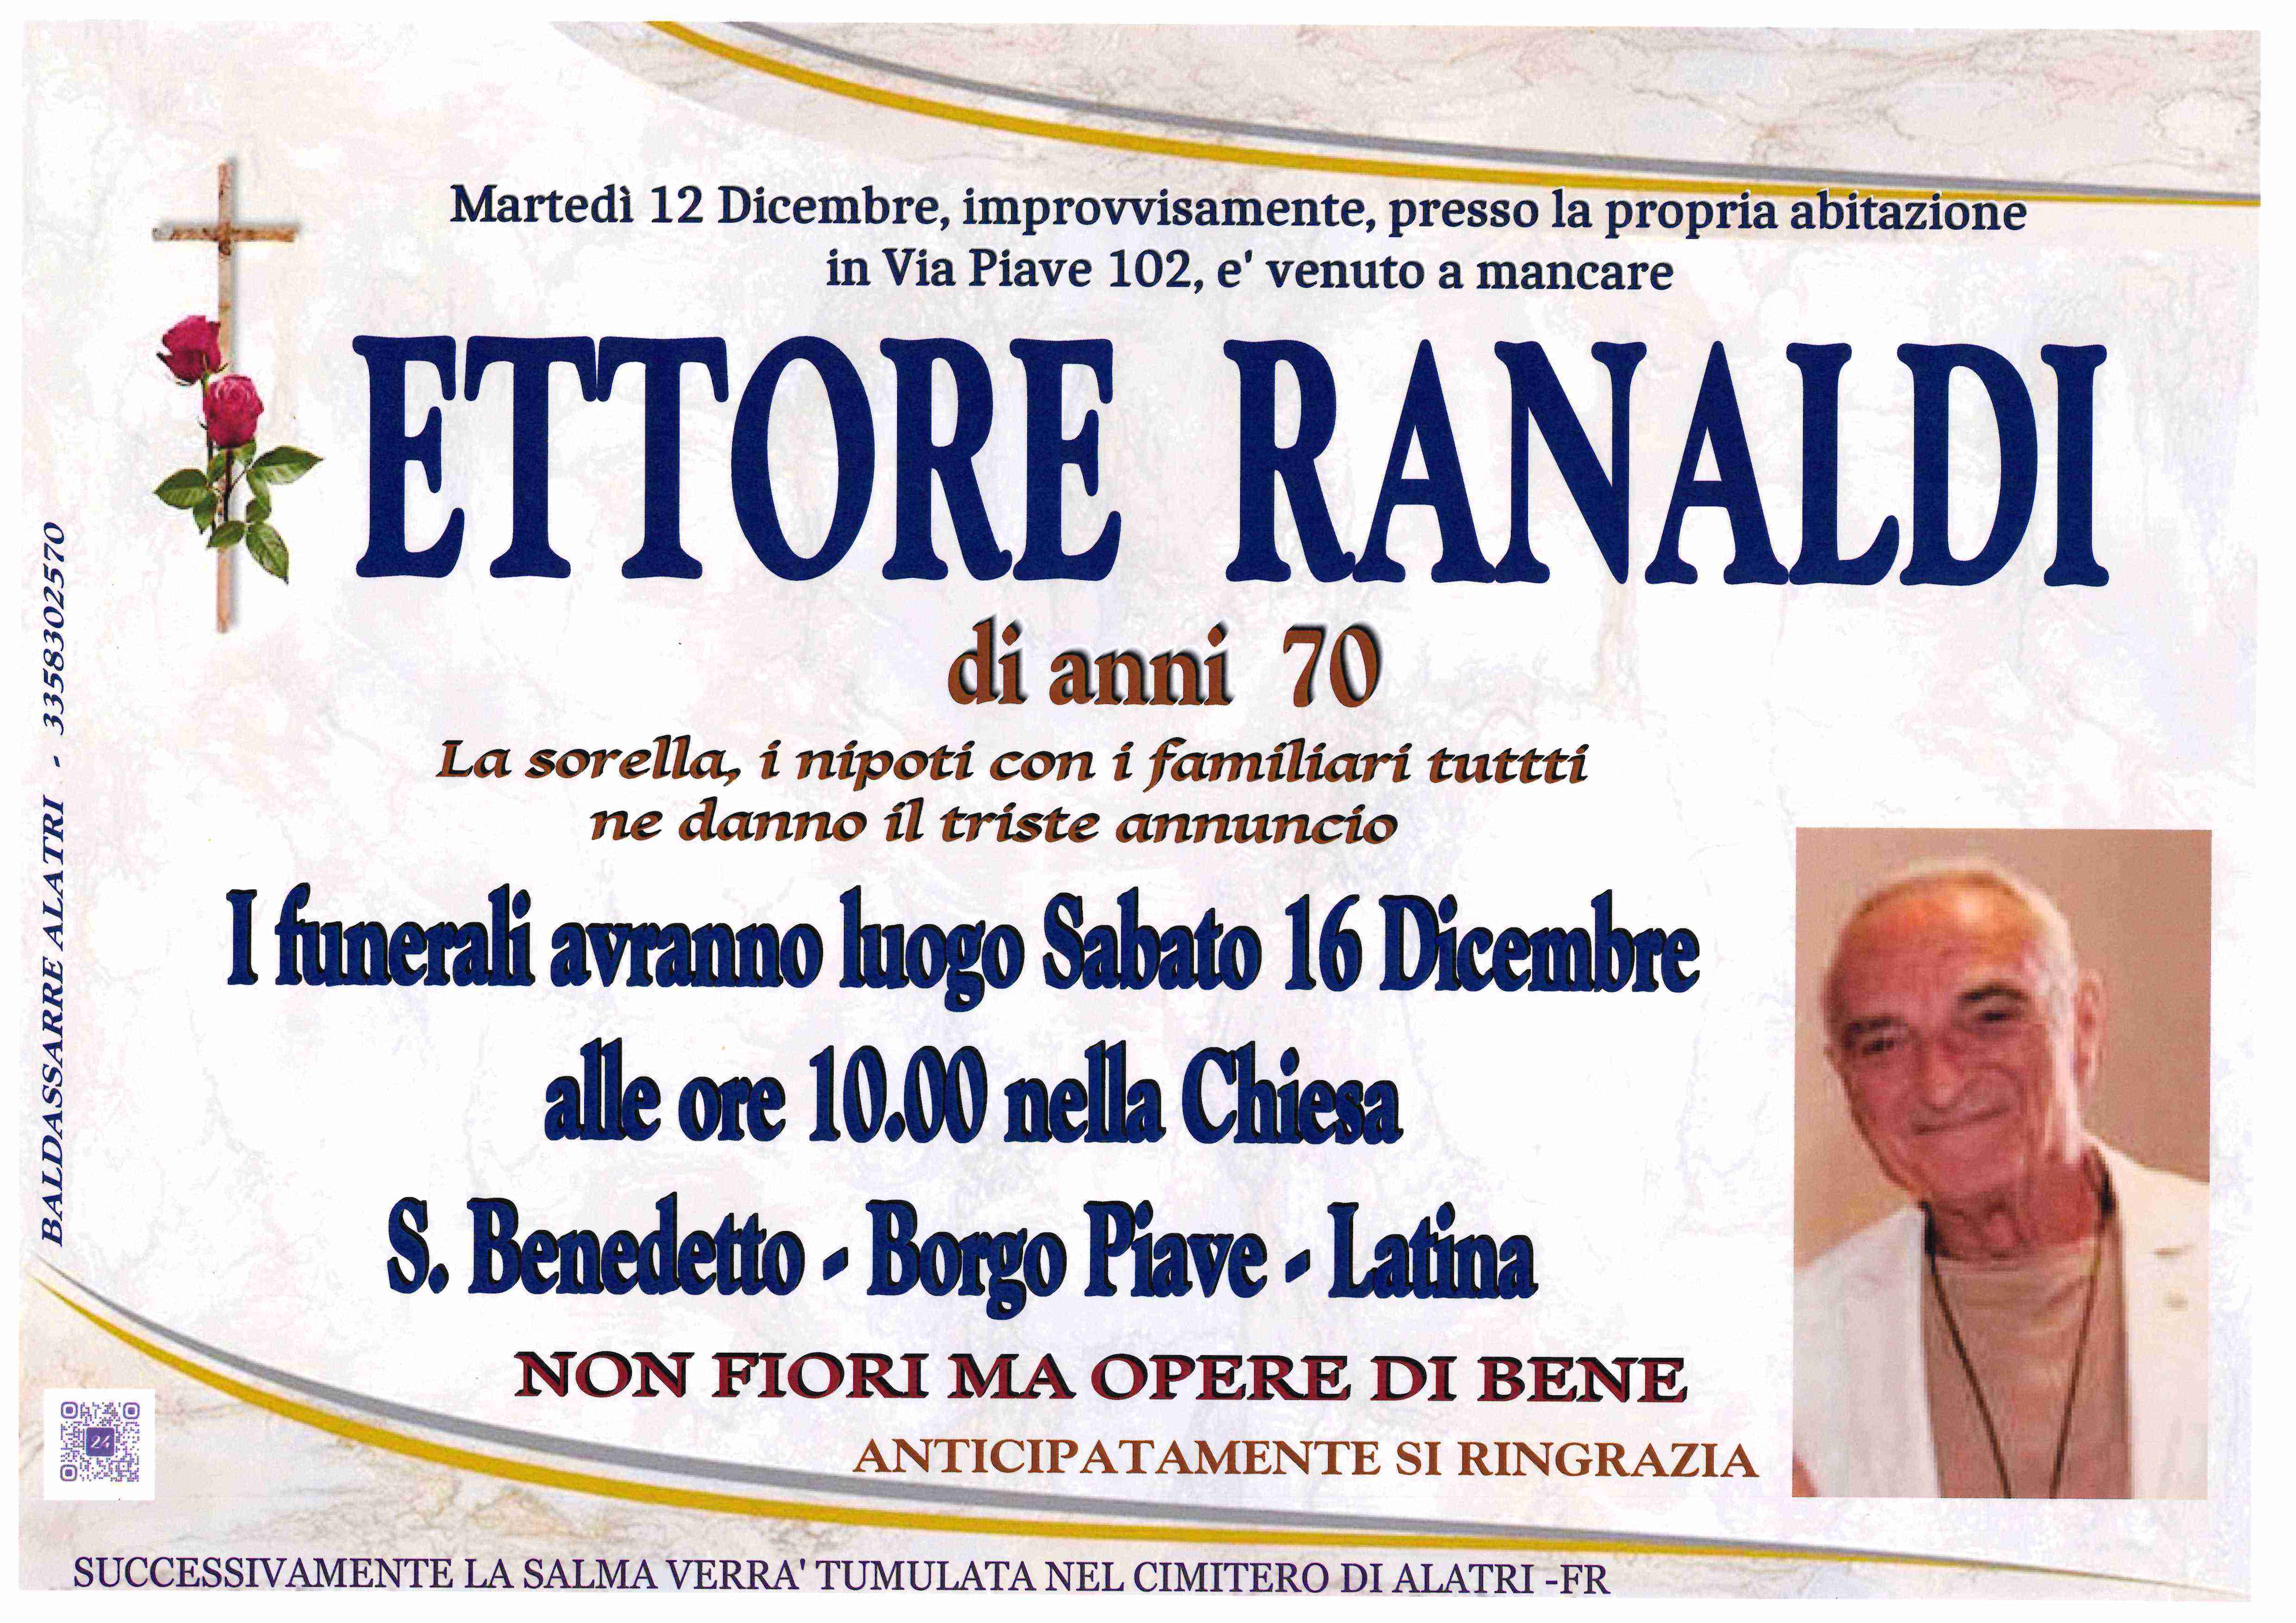 Ettore Ranaldi